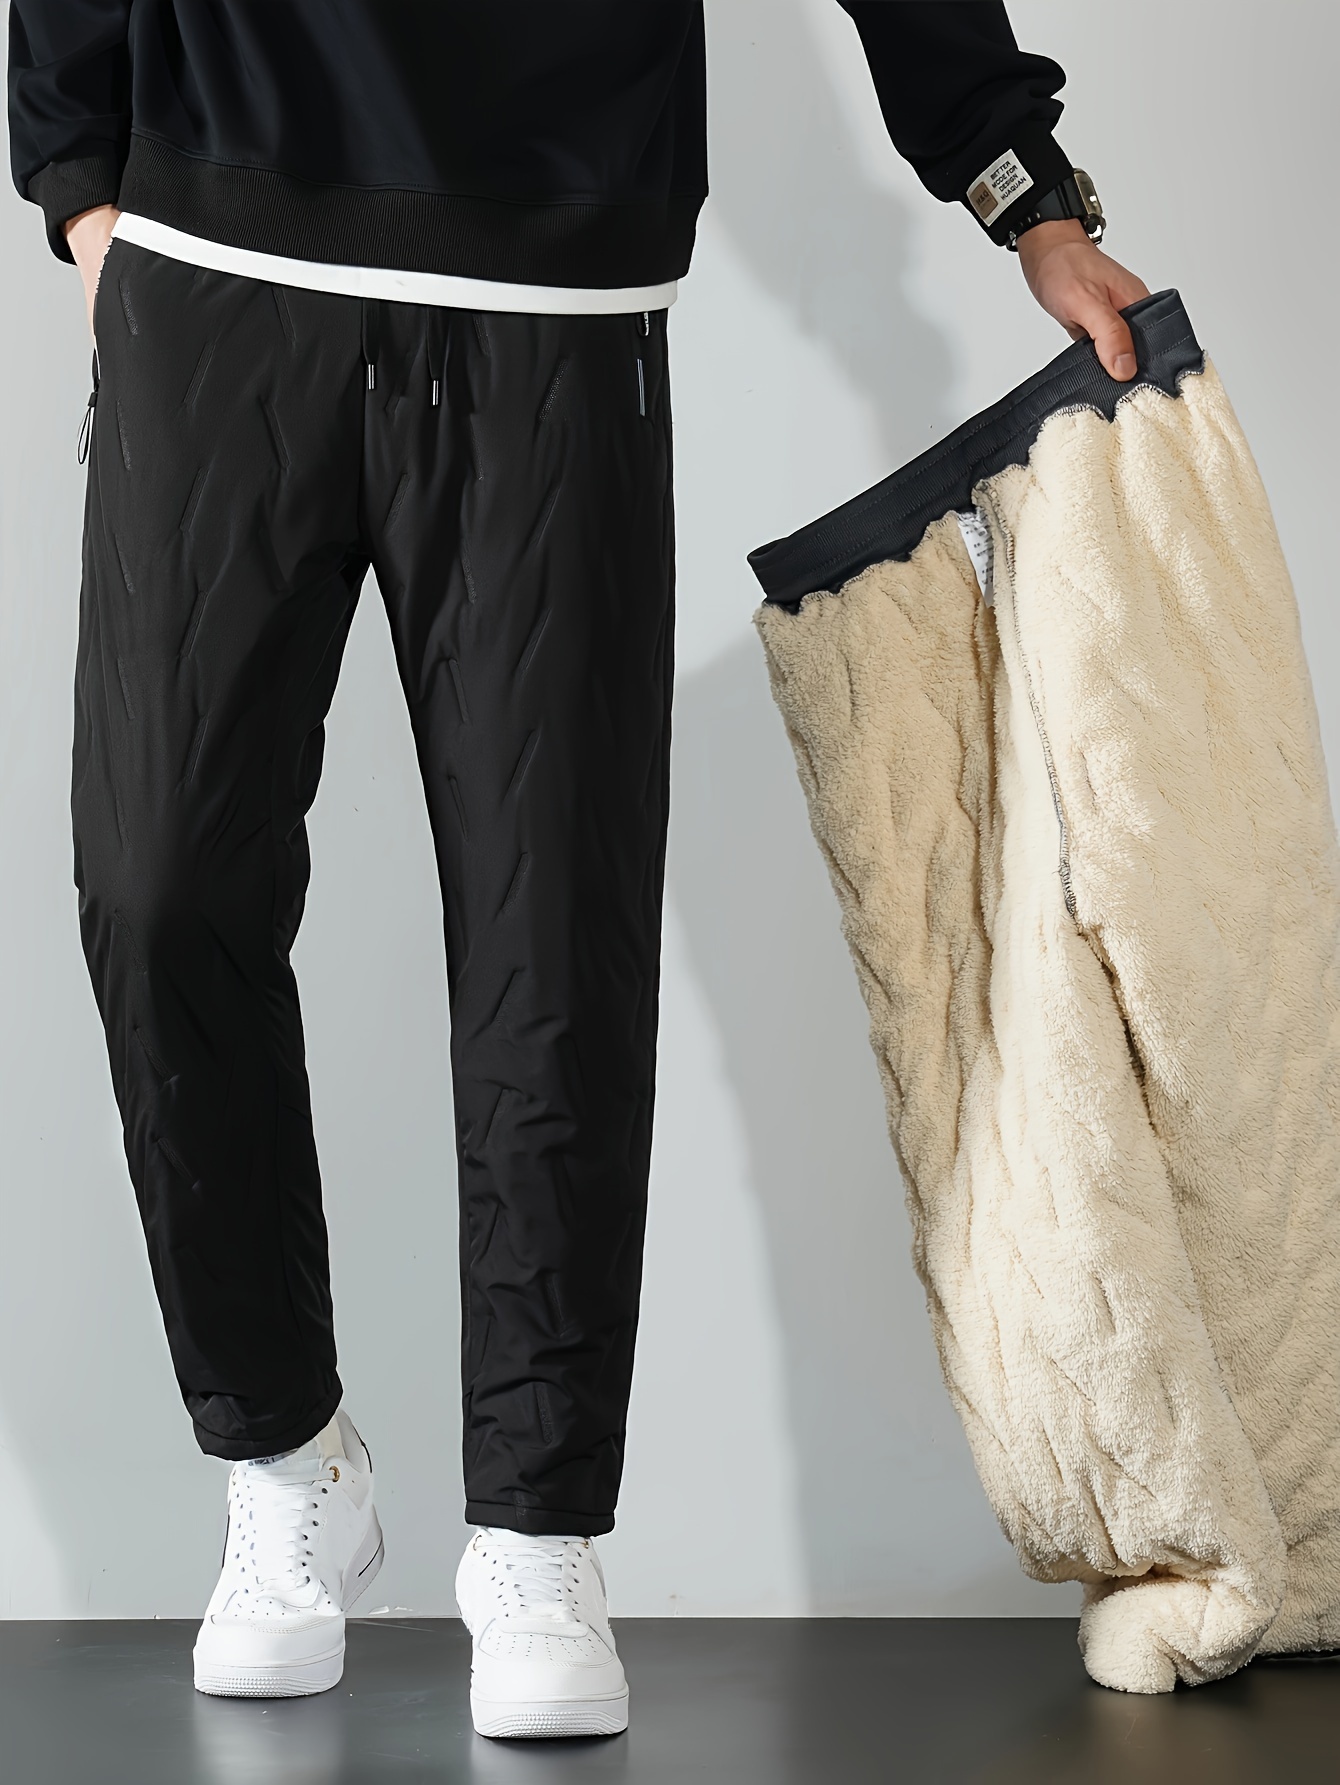 Fleece Thermal Trousers, Fleece Track Pants, Fleece Sweatpants